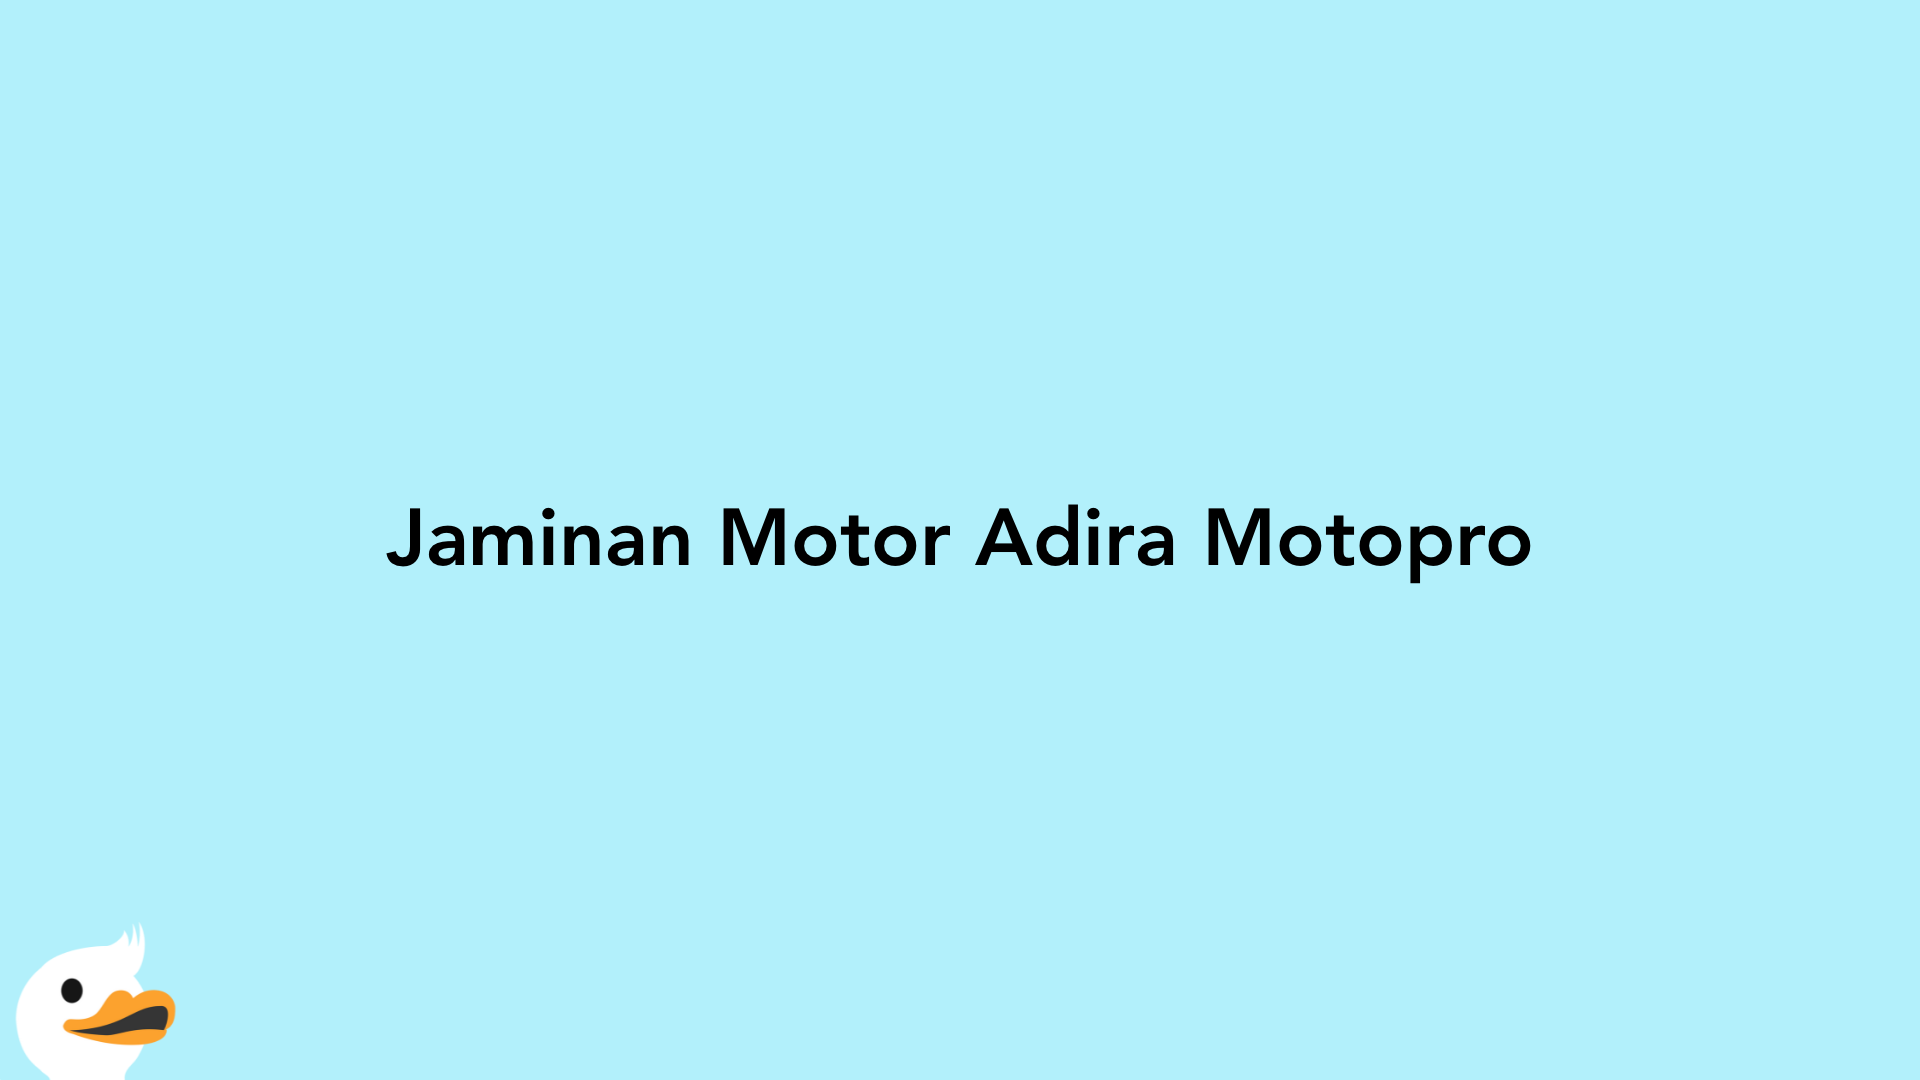 Jaminan Motor Adira Motopro